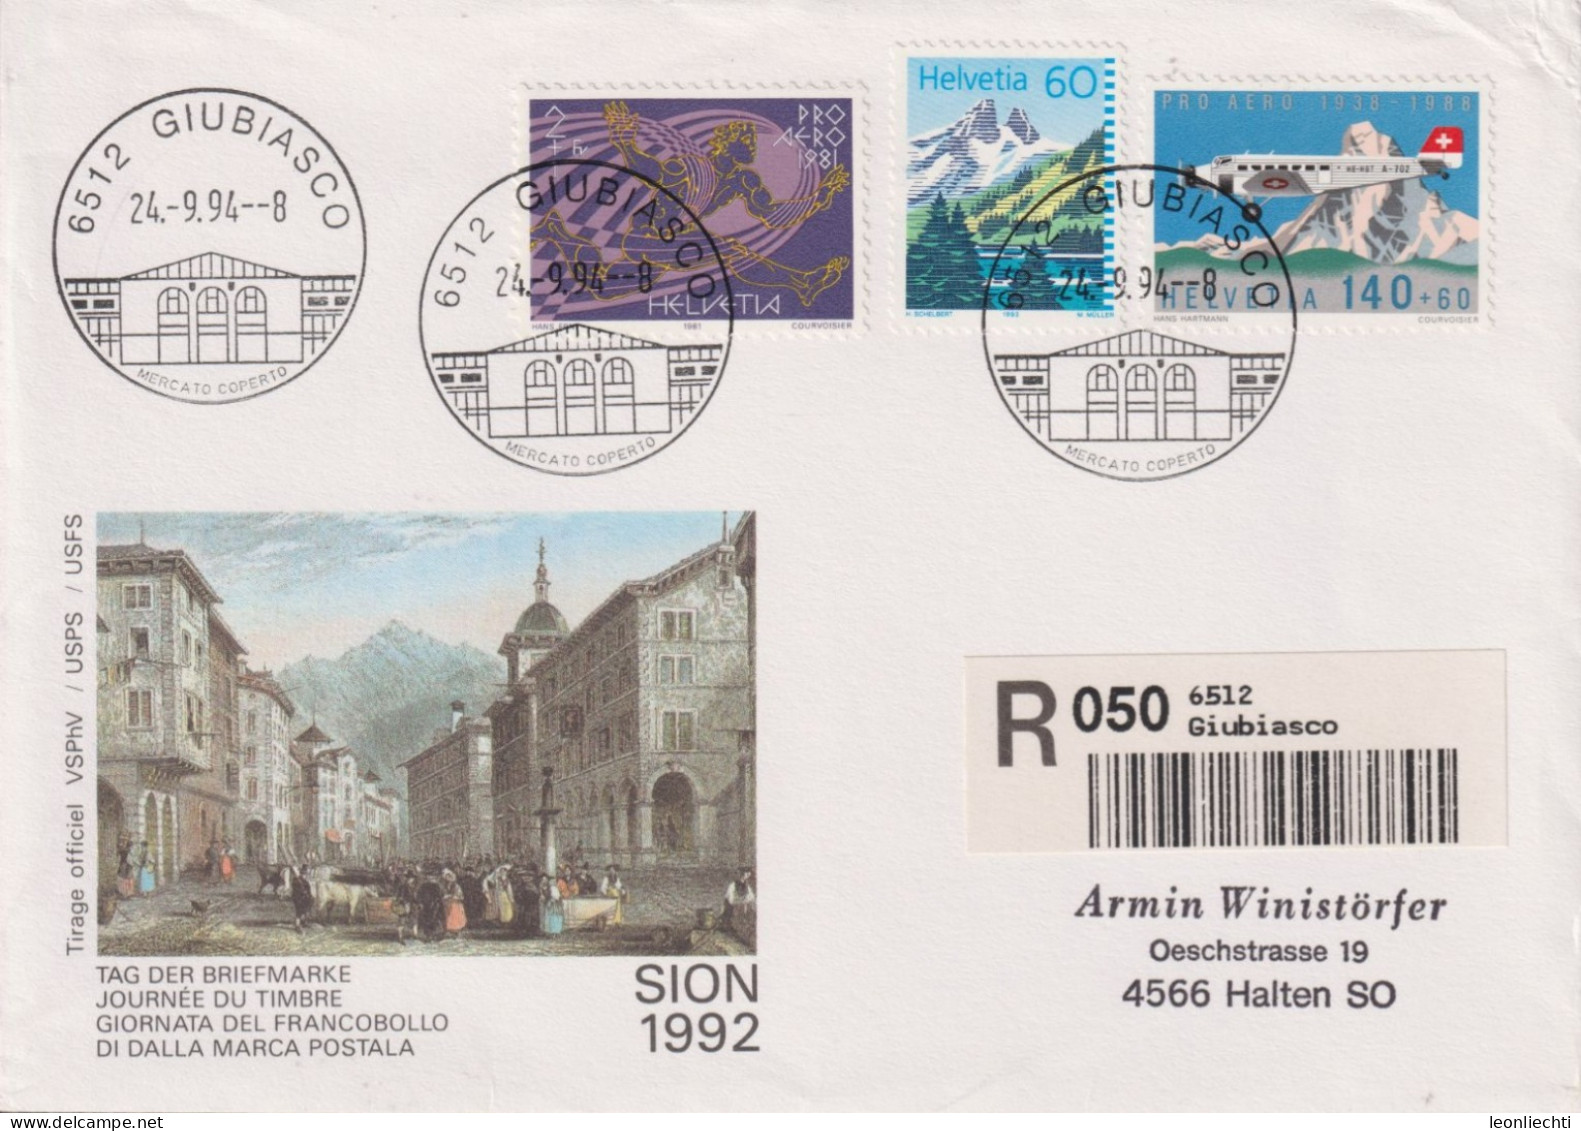 1994 Schweiz Tag Der Briefmarke Sion, Zum:CH F49+W48+837, Mi:CH 1369+1196+1489, ° 6512 GIUBIASSCO - Storia Postale